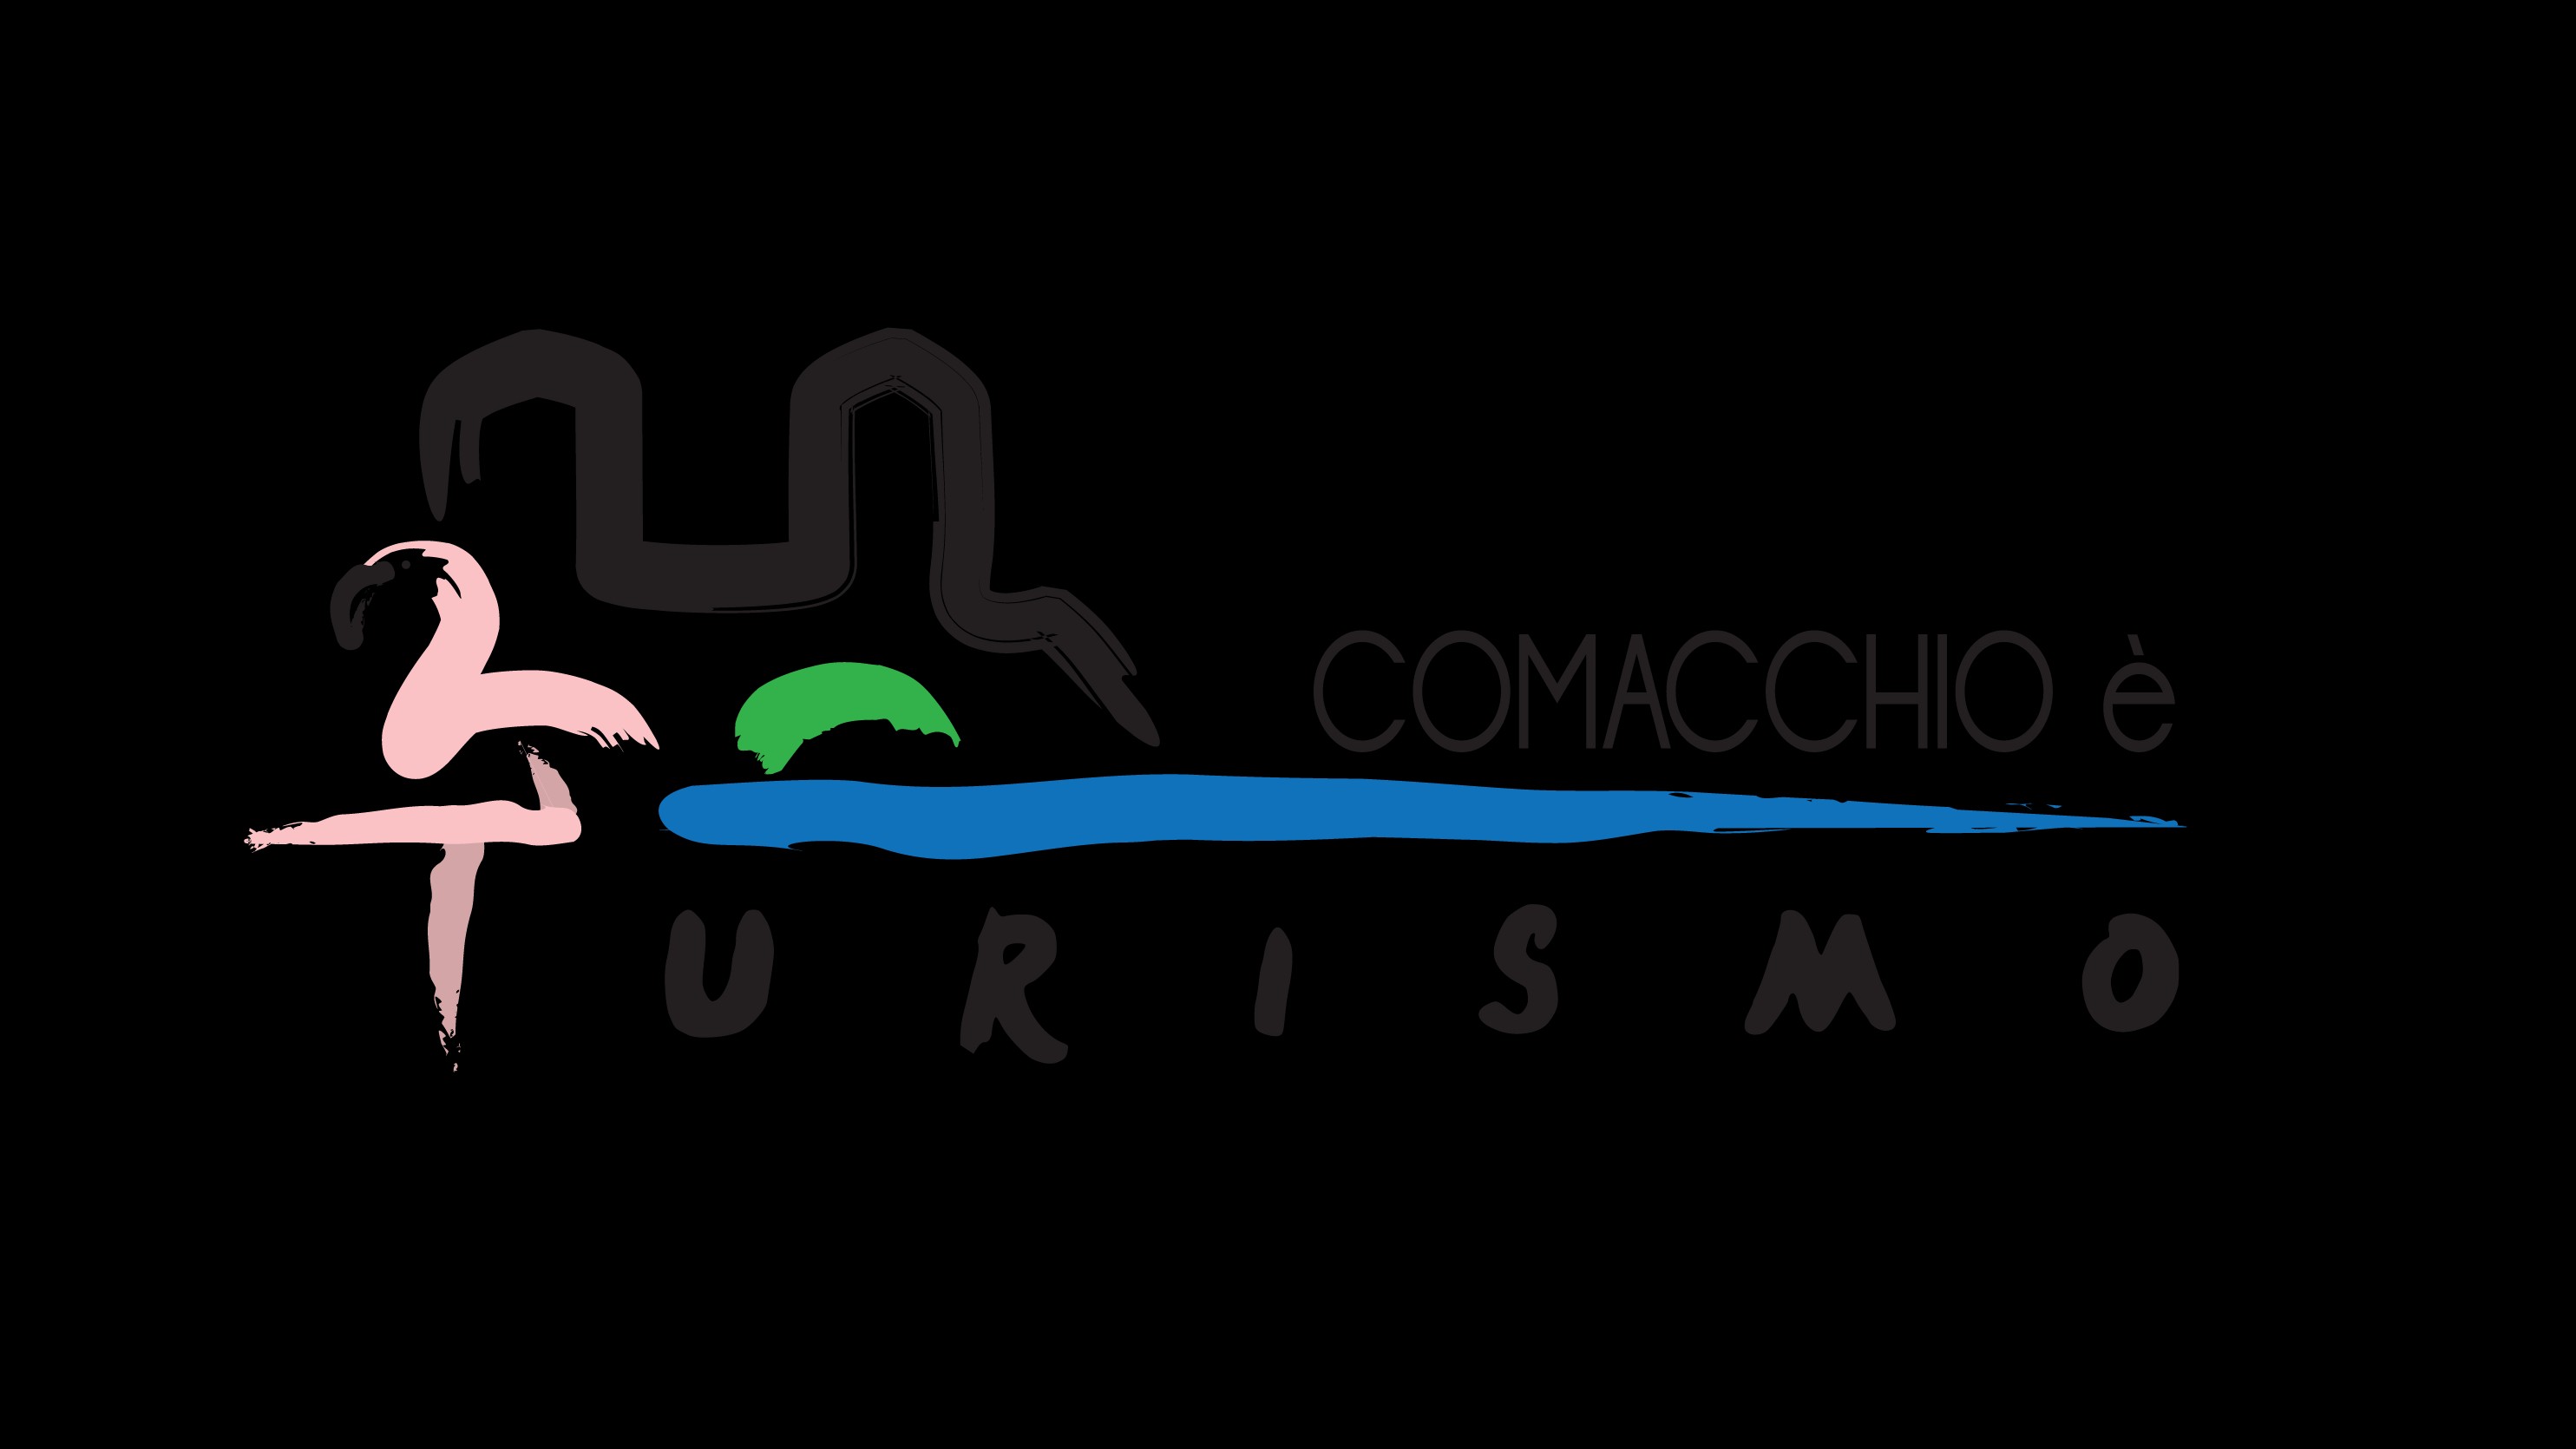 Dopo lo straordinario successo dell'edizione 2014 del Comacchio Summer Fest e nell'attesa dell'edizione 2015, un altro importante evento entra nel carnet dell'associazione: COMACCHIO CIASPOL FEST ON